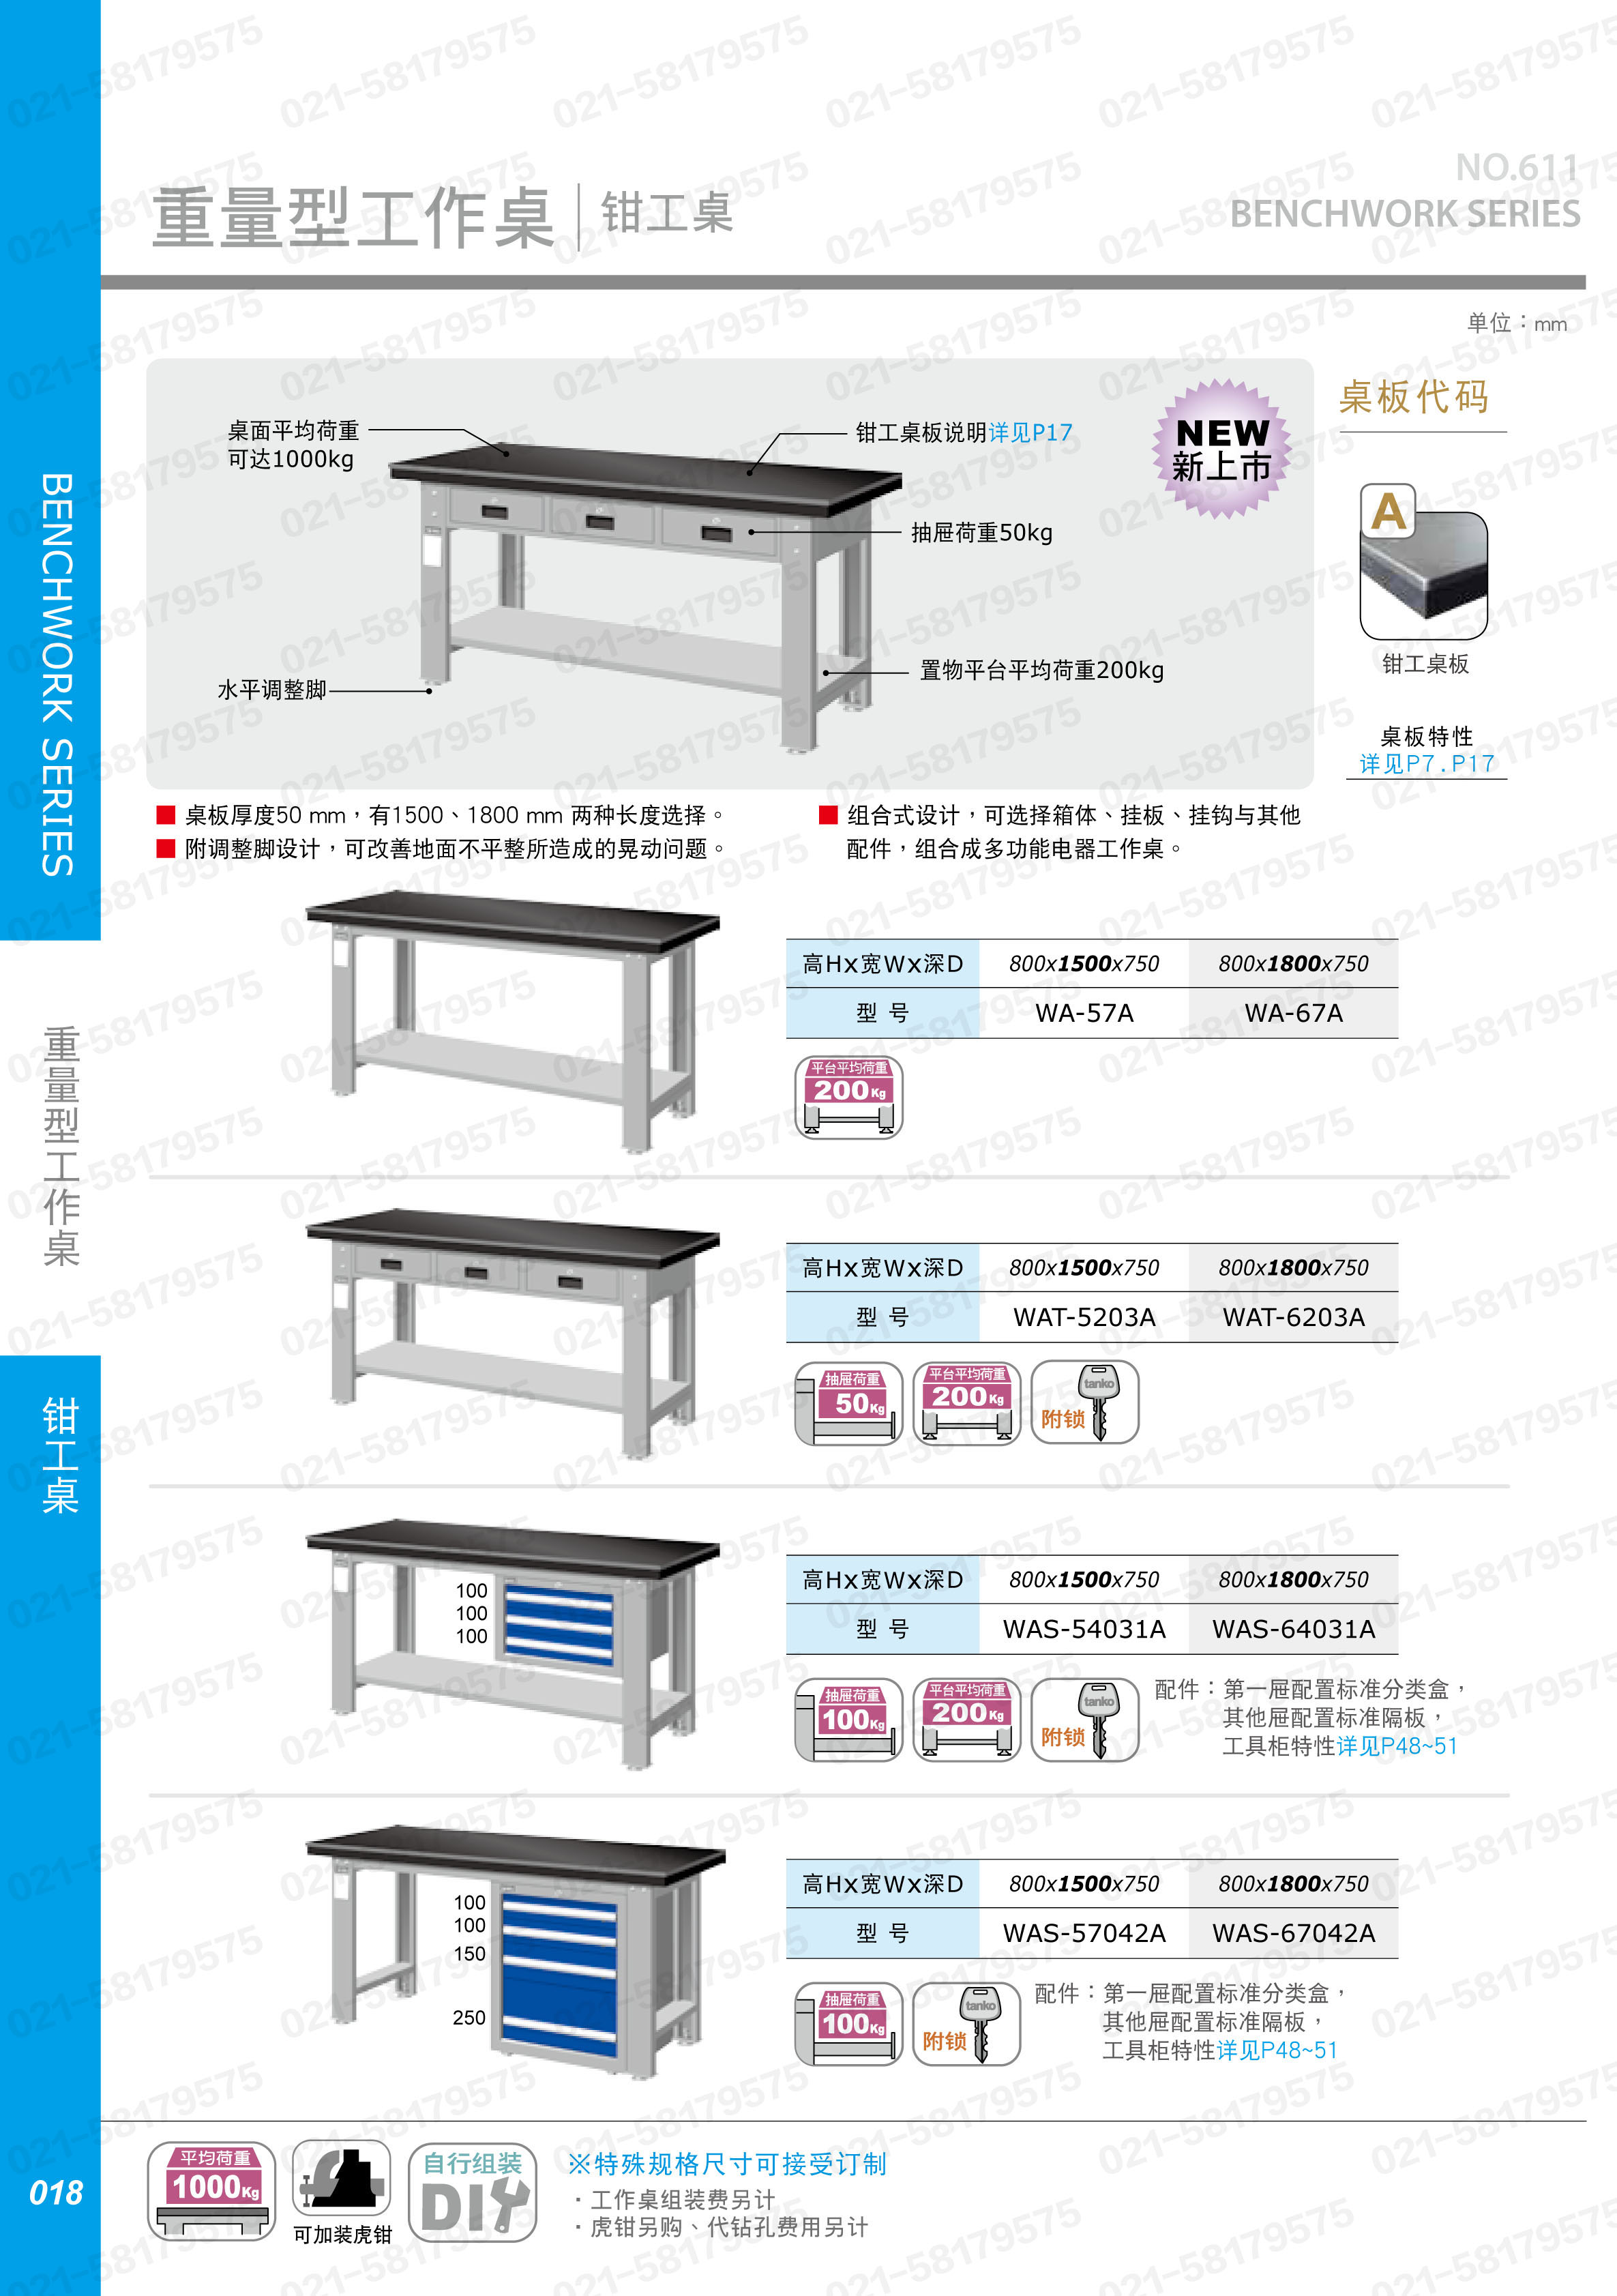 重型工作桌(底部配搁板)1500×750×800mm 钳工桌板,WA-57A,5D2920